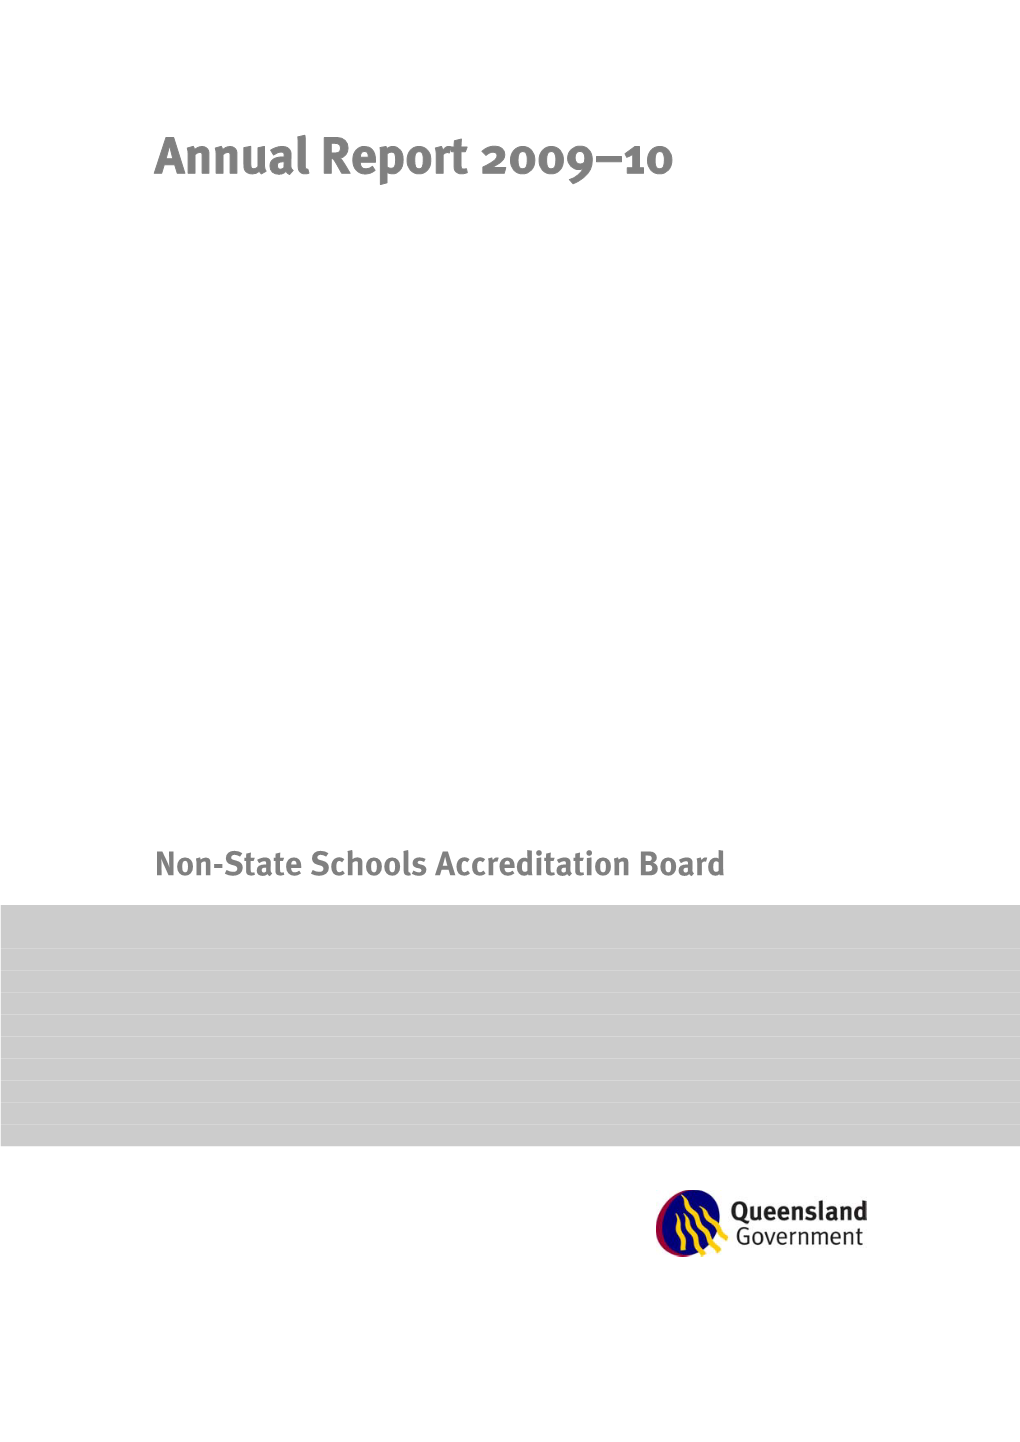 Non-State Schools Accreditation Board Annual Report 2009-10